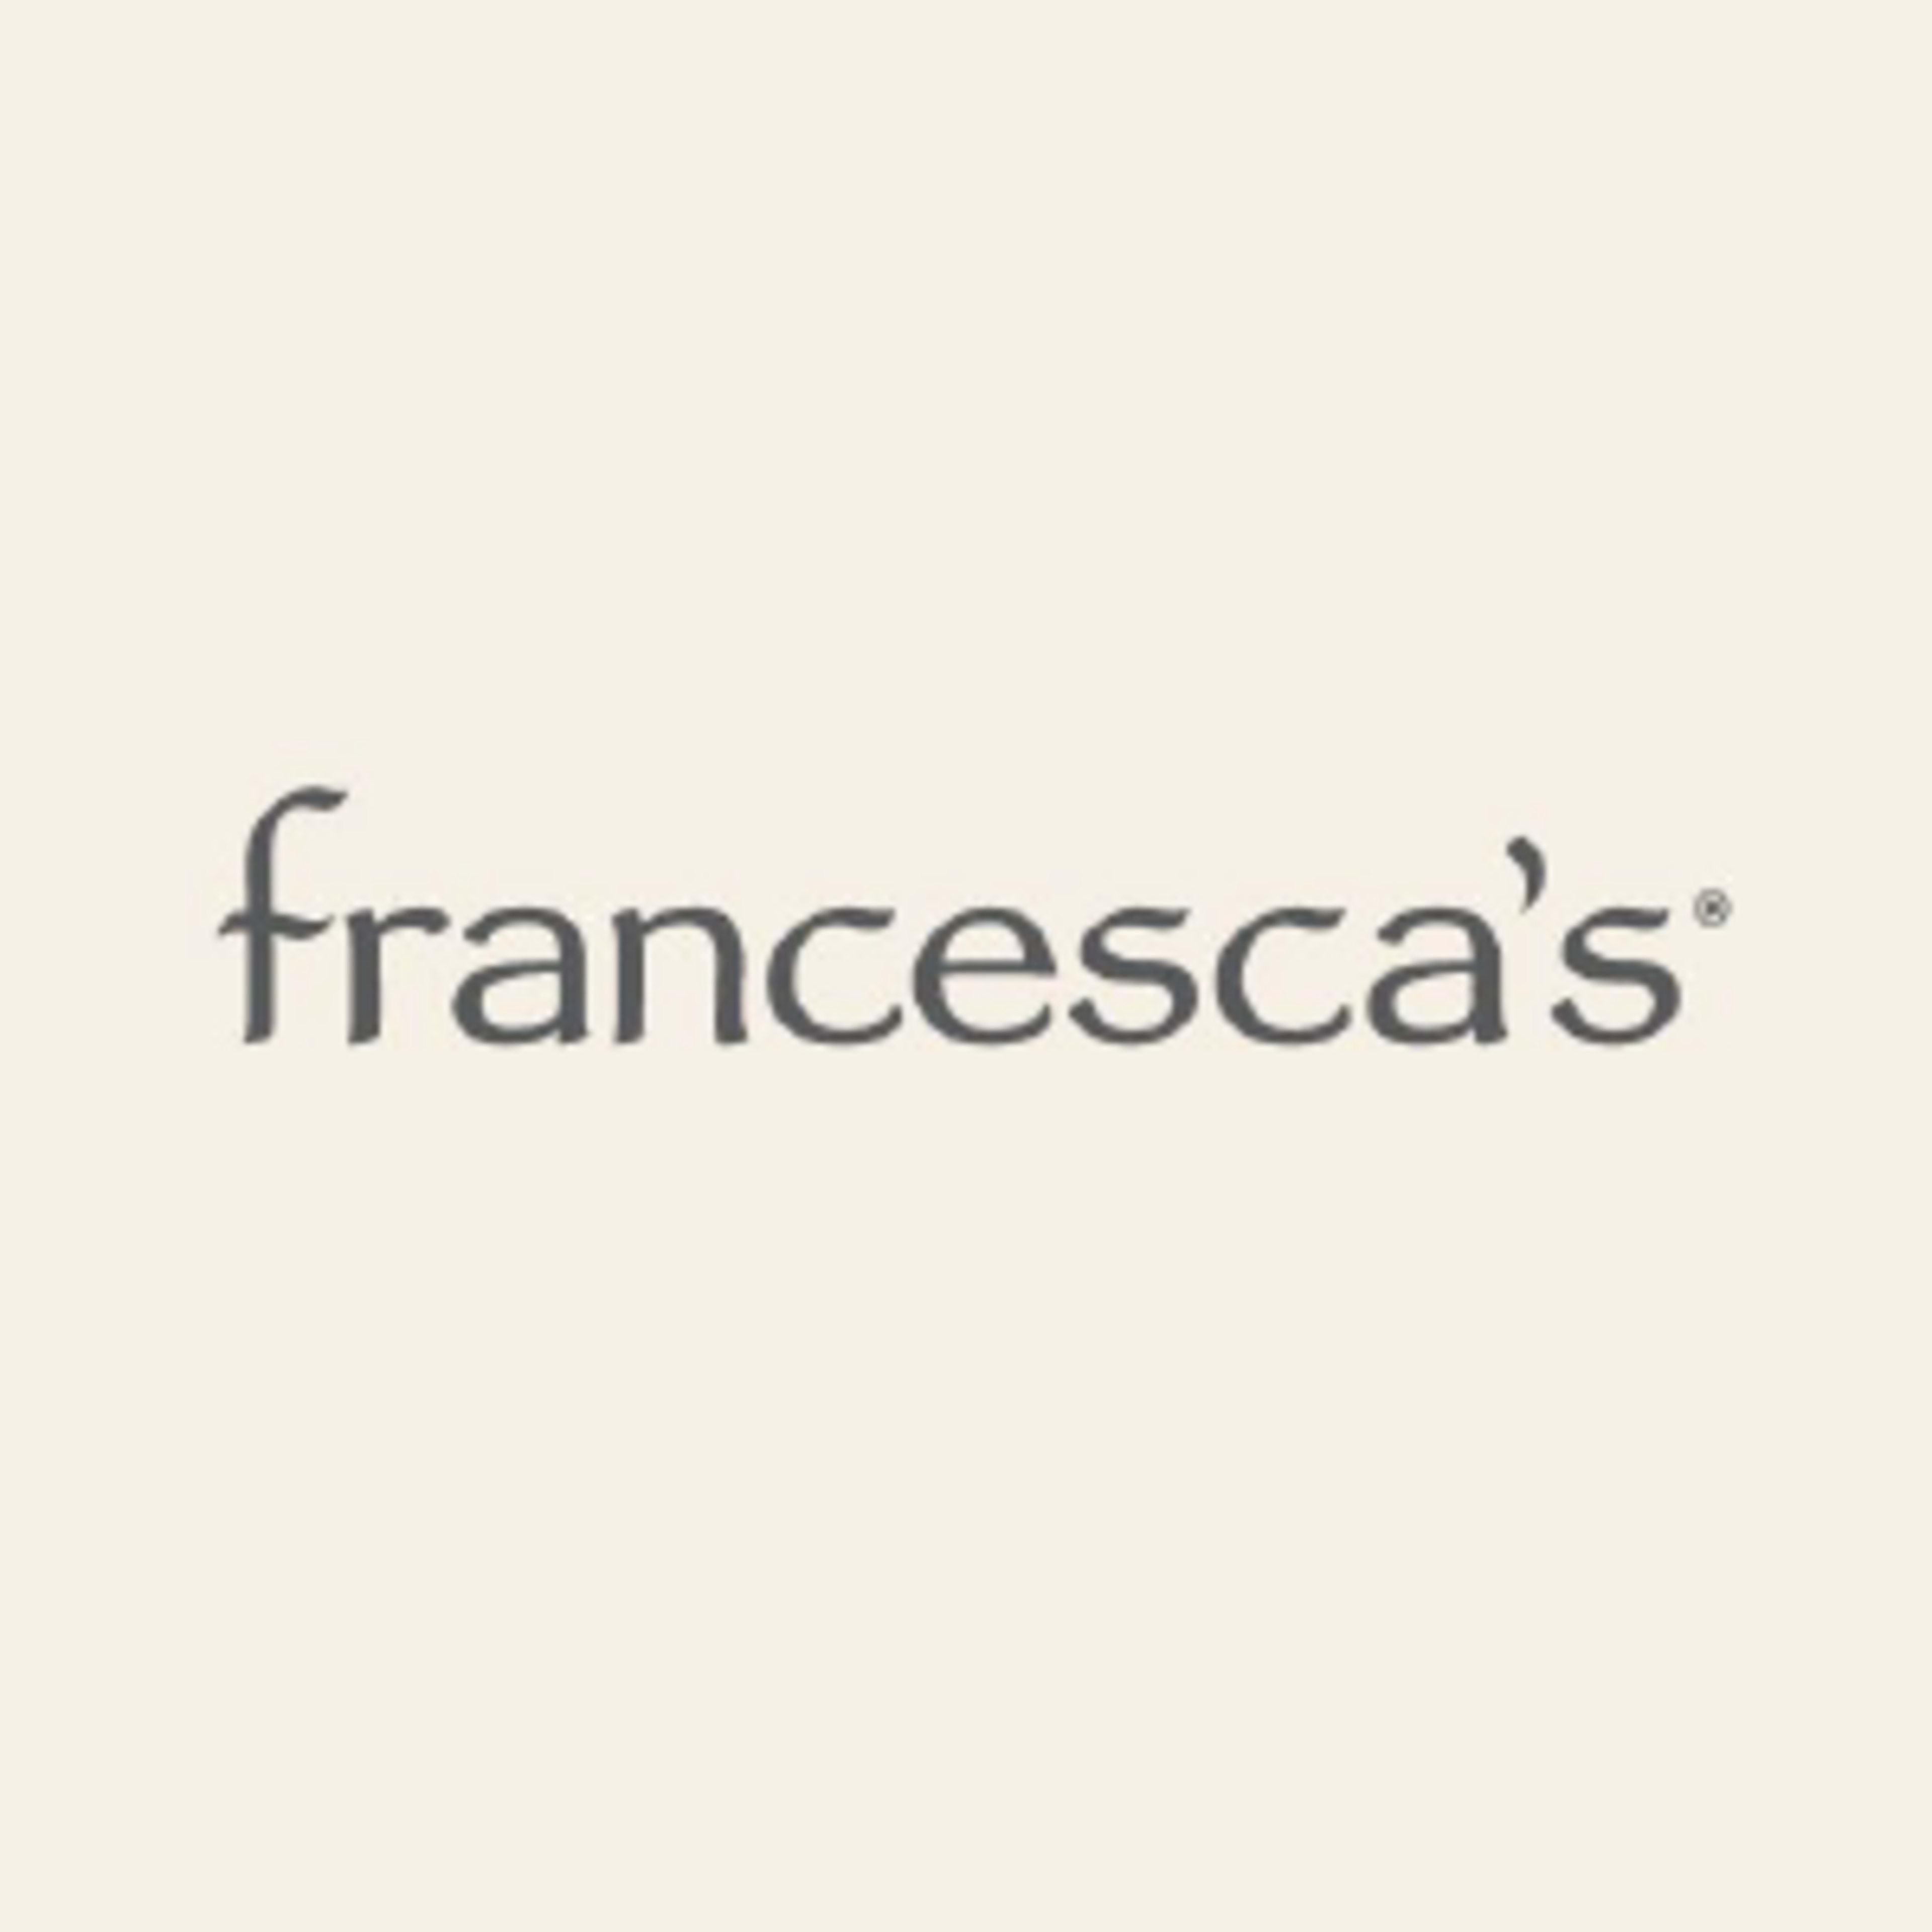 Francesca's Code